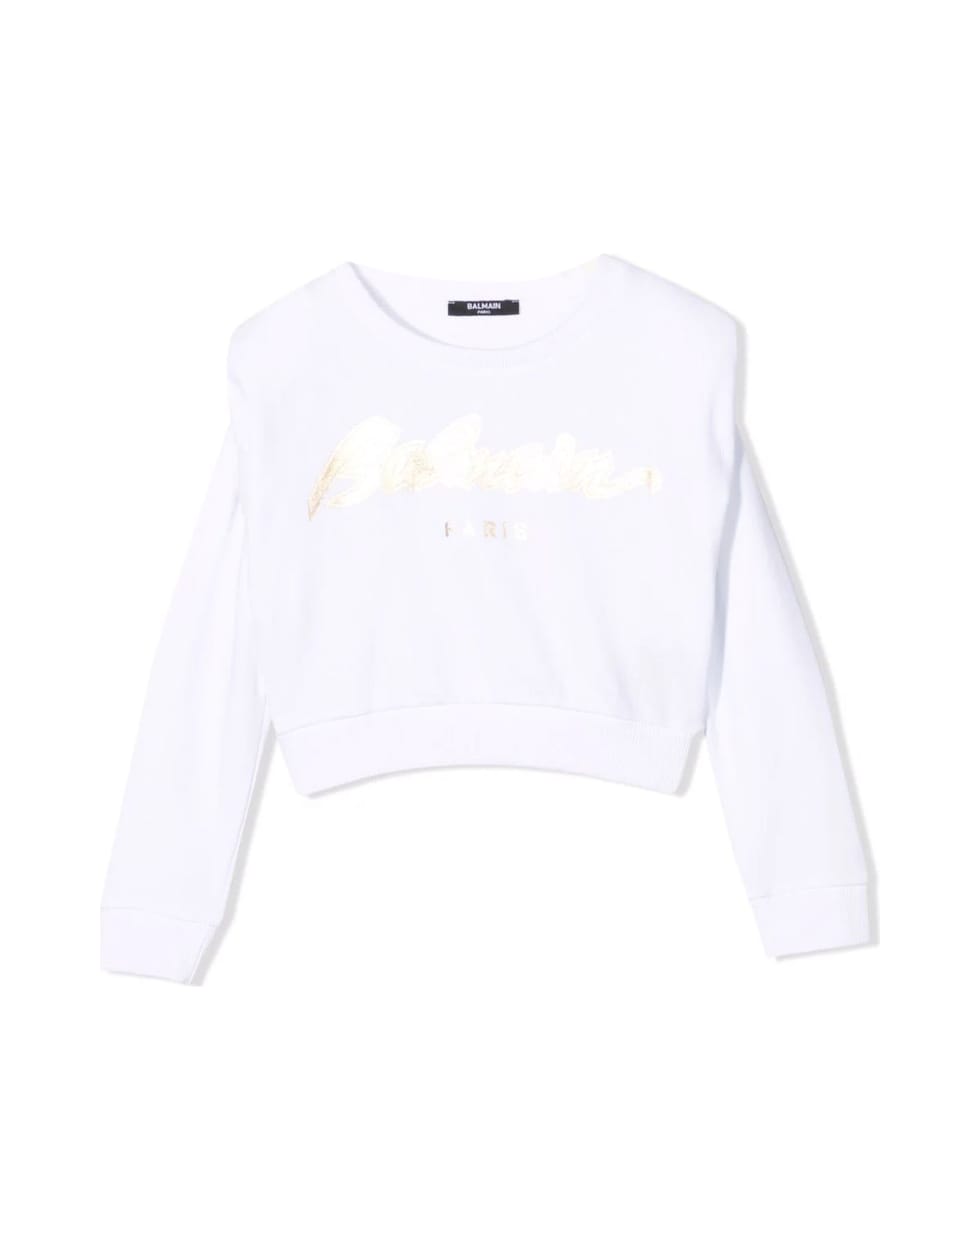 Balmain White Cotton Sweatshirt - Bianco